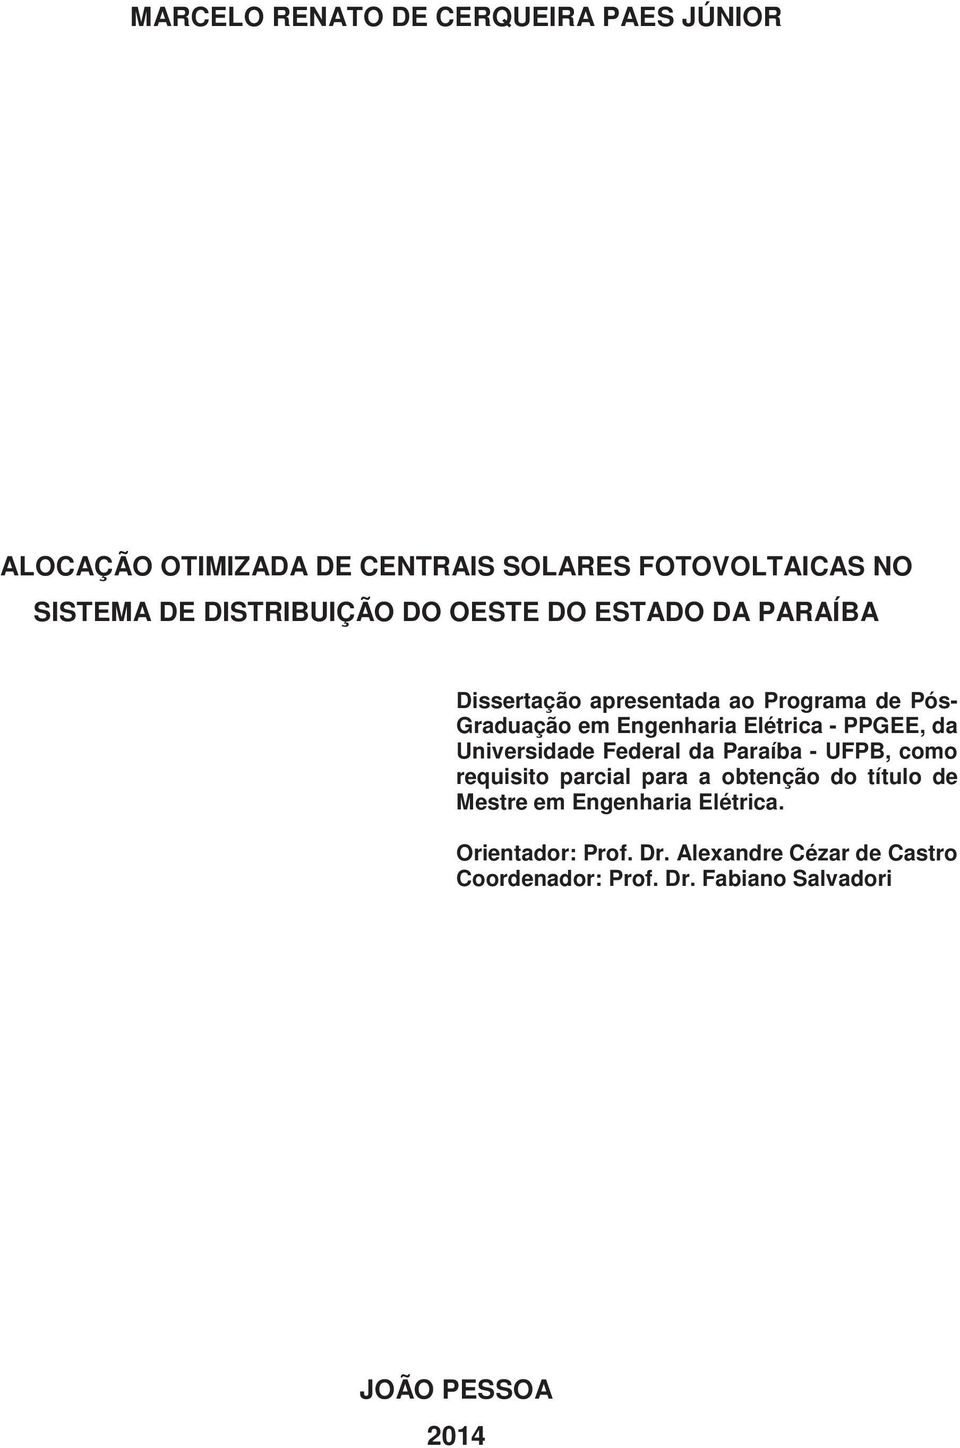 Elétrica - PPGEE, da Universidade Federal da Paraíba - UFPB, como requisito parcial para a obtenção do título de